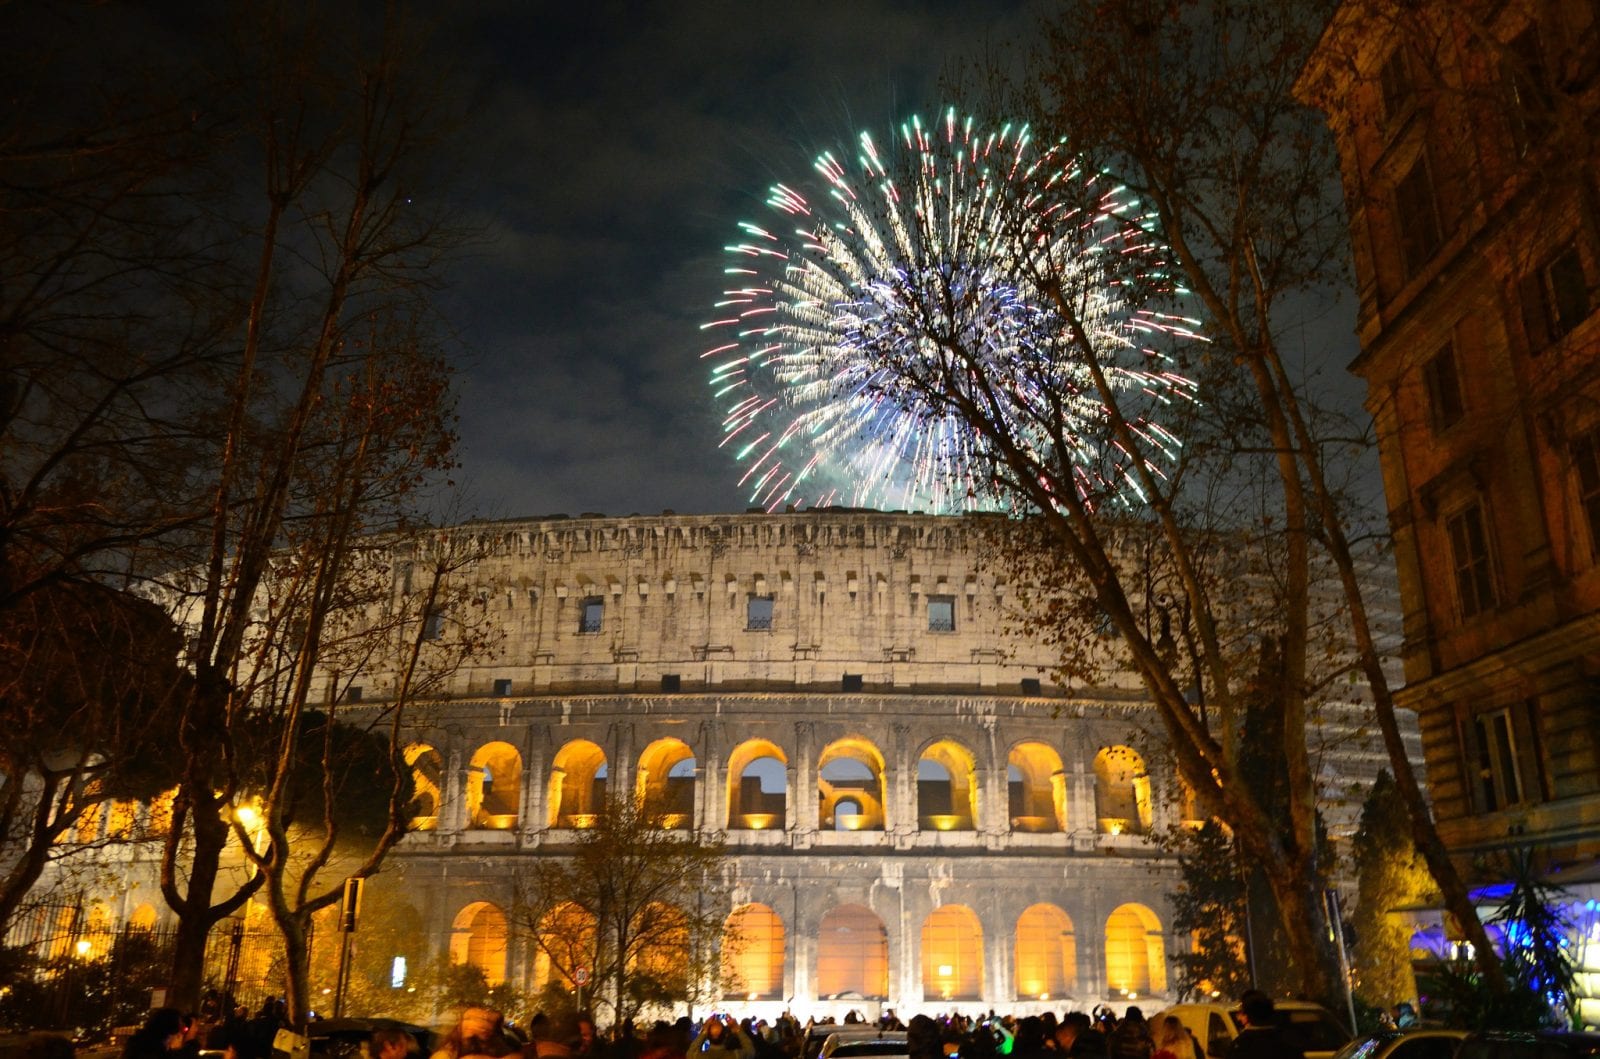 Rome Colosseum capodanno 2014 fireworks